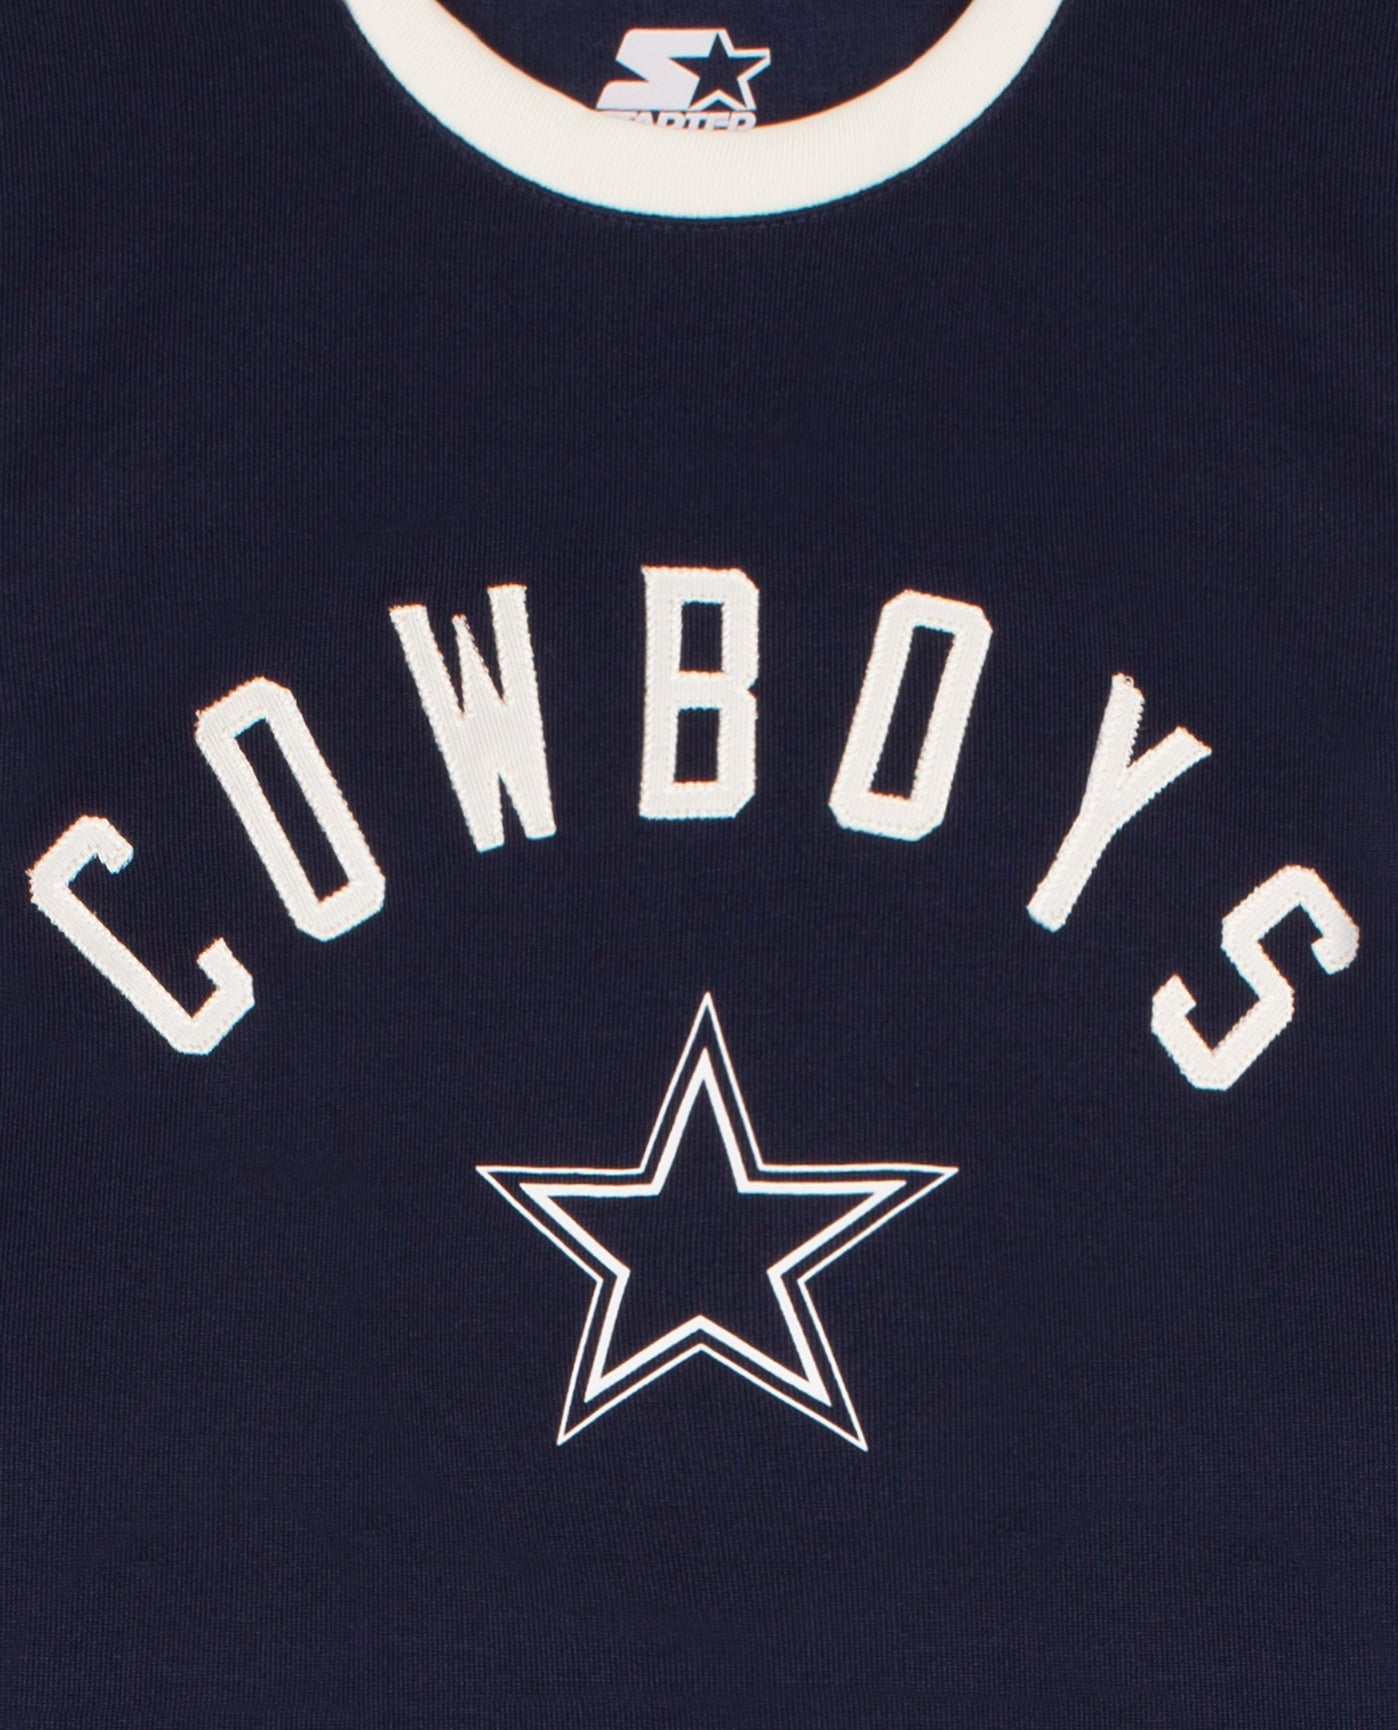 Dallas Cowboys Ladies Navy Blue Bernice Tube Dress  Dallas cowboys dresses,  Dallas cowboys outfits, Dallas cowboys women